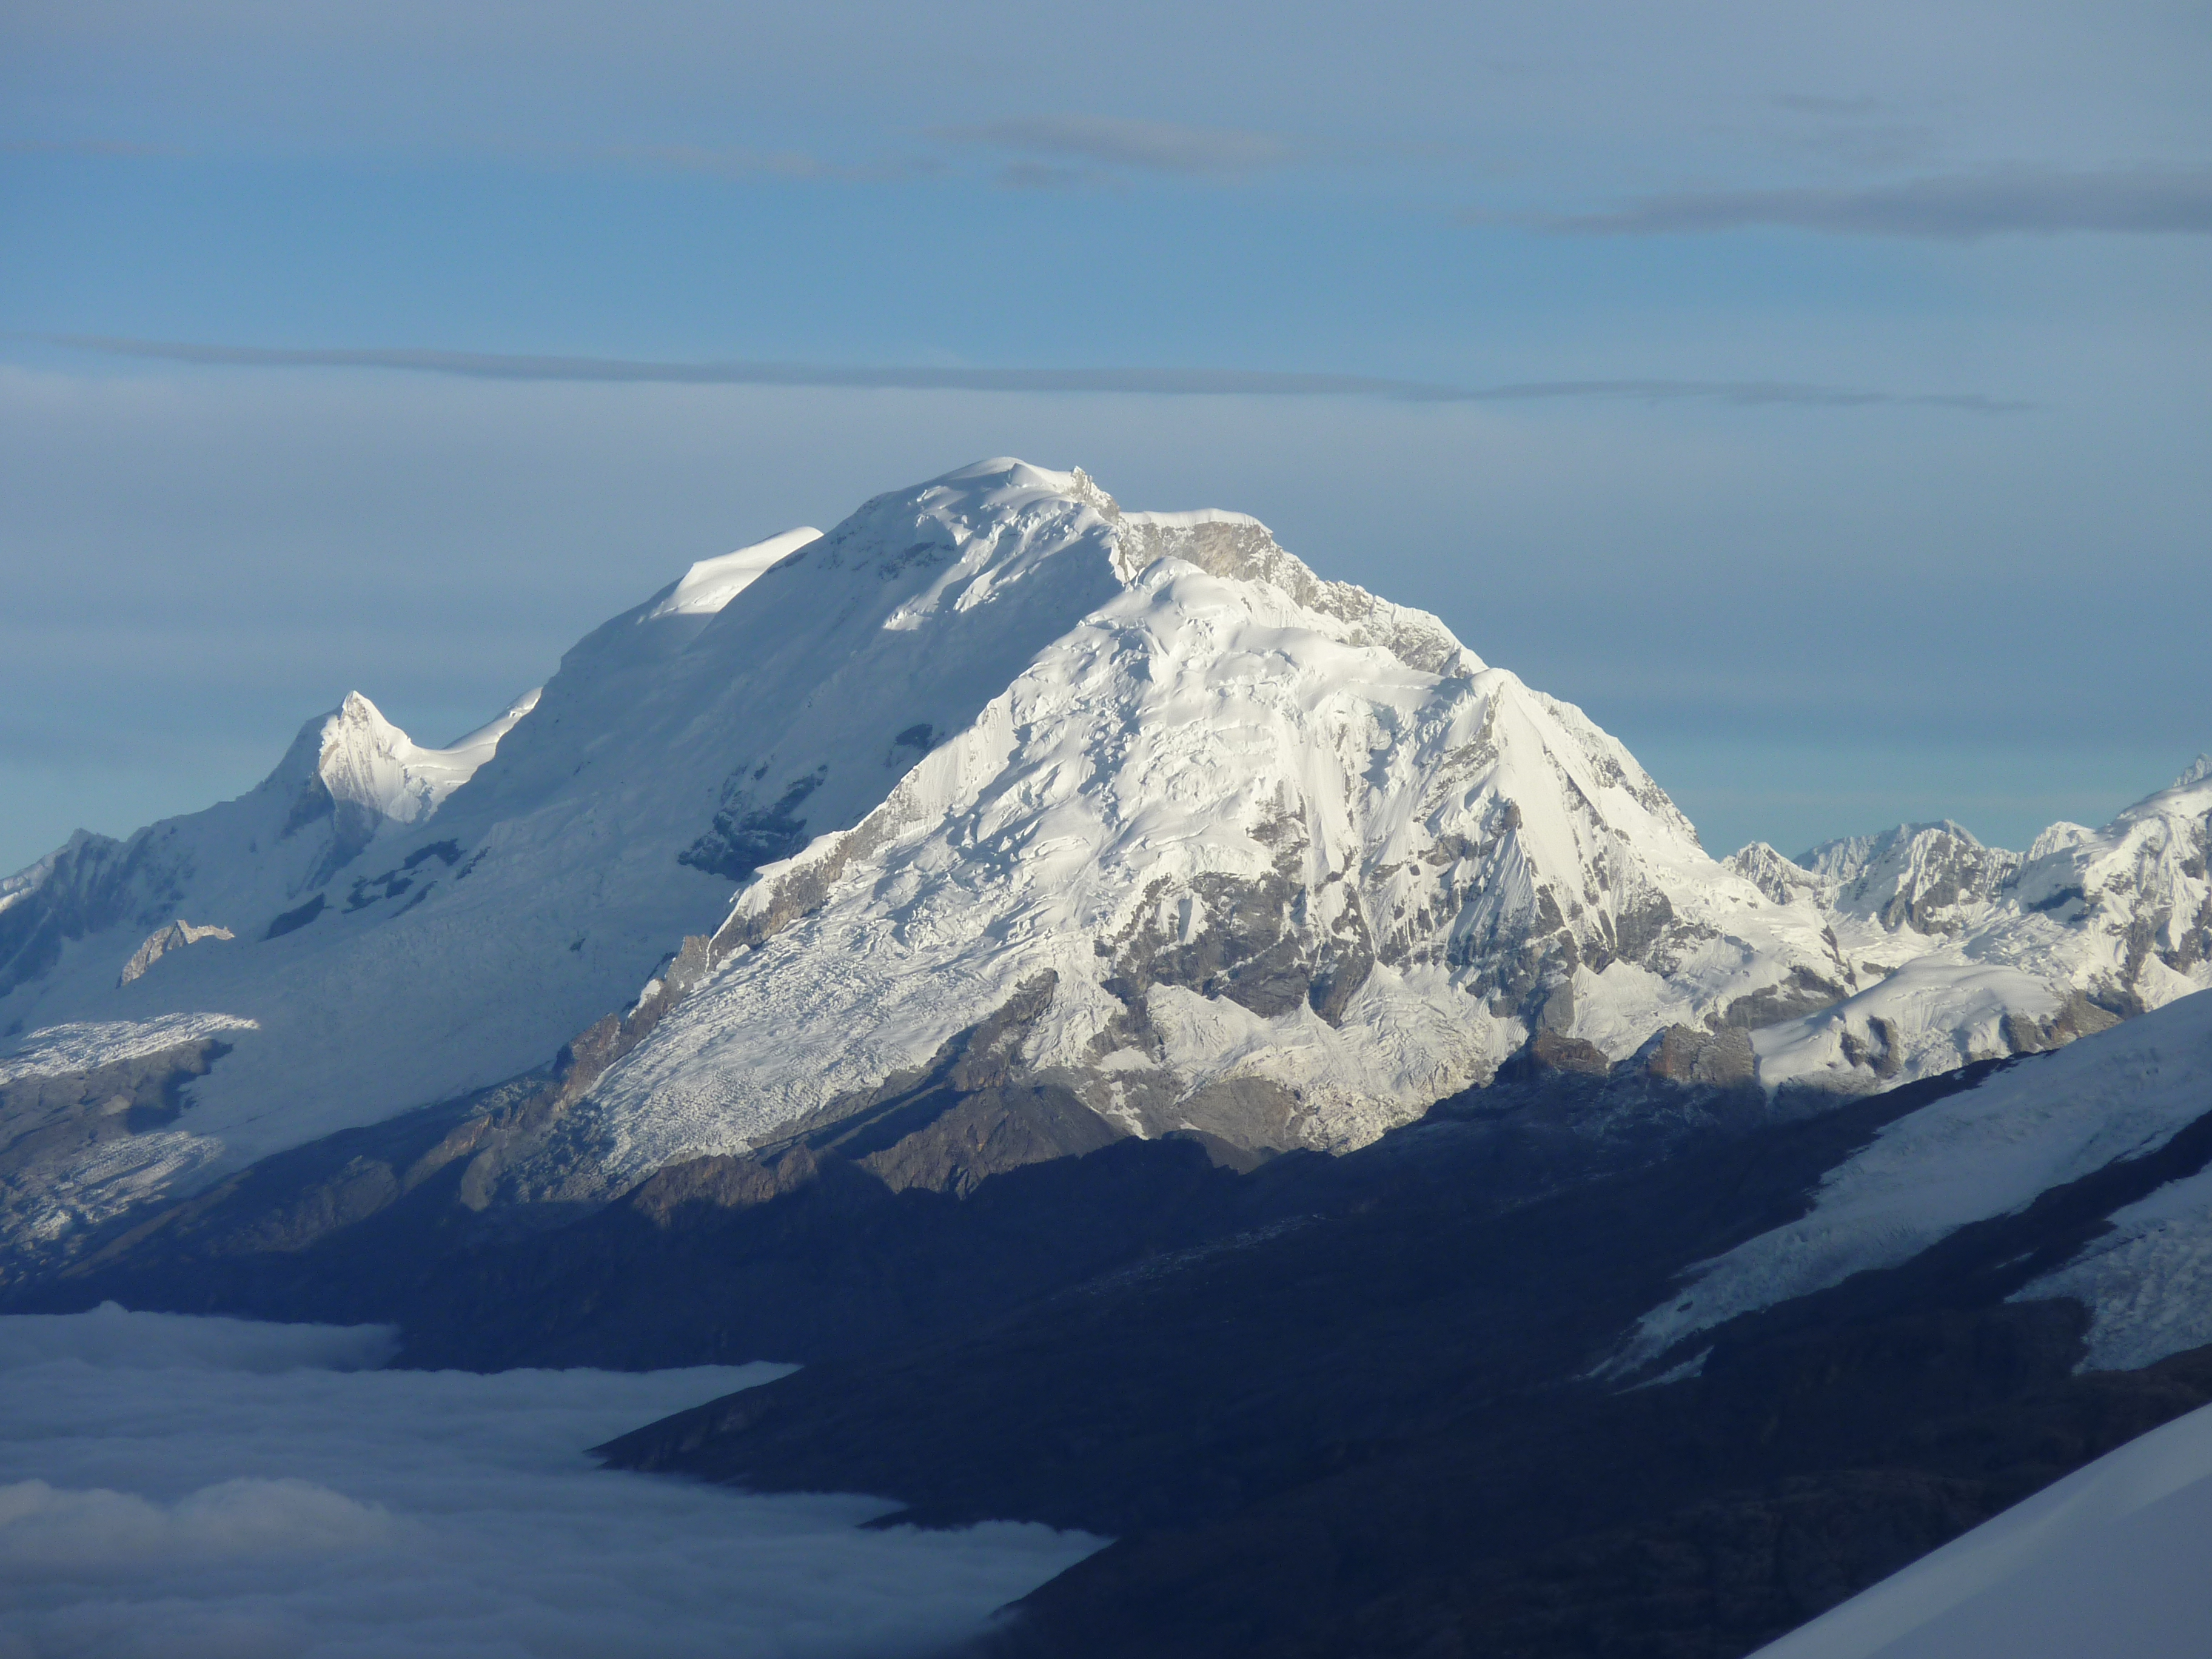 22,200' Huascaran peak, the highest peak in Peru and 4th highest in South America.